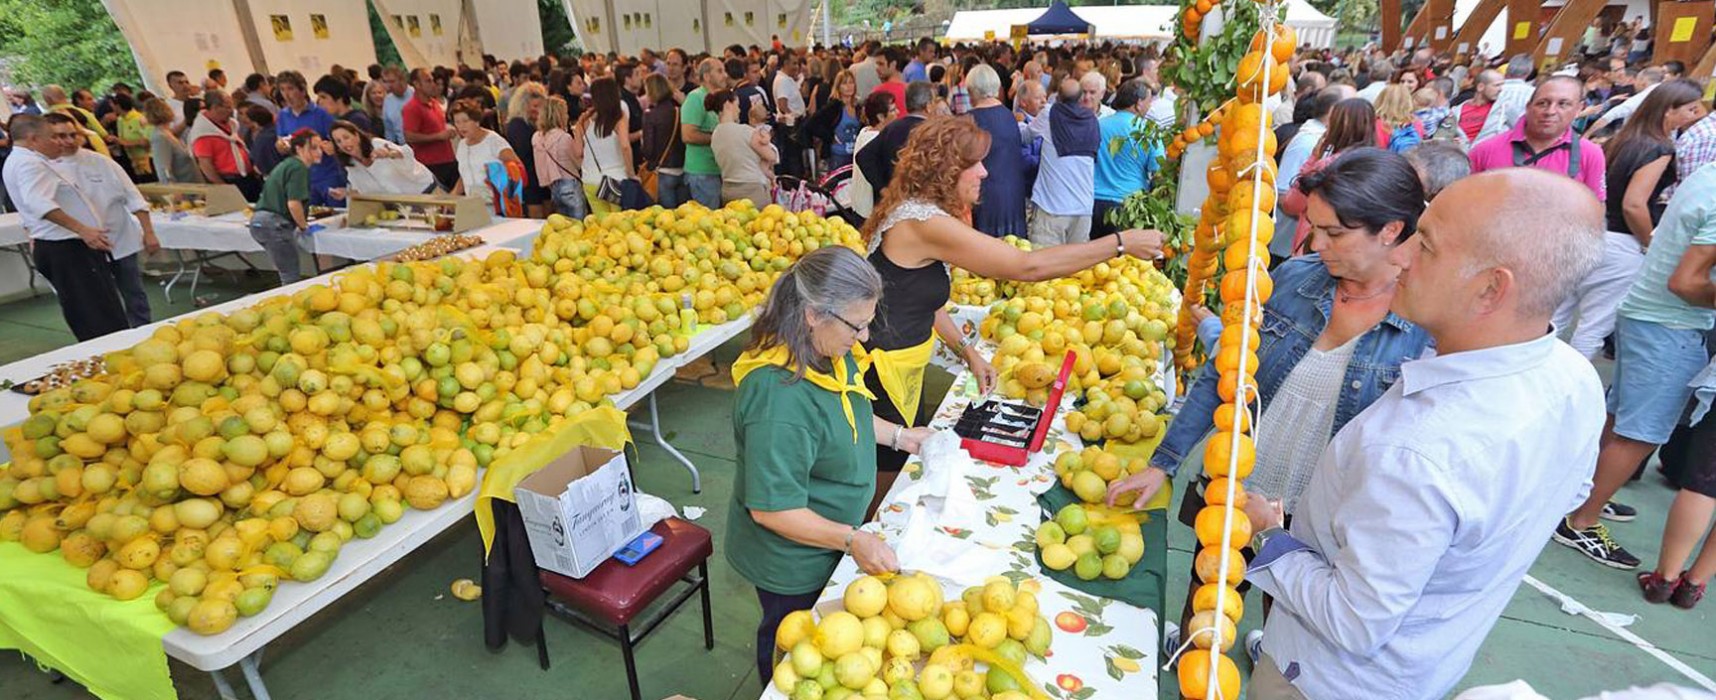 Limones Solidarios diversifica sus fines sociales